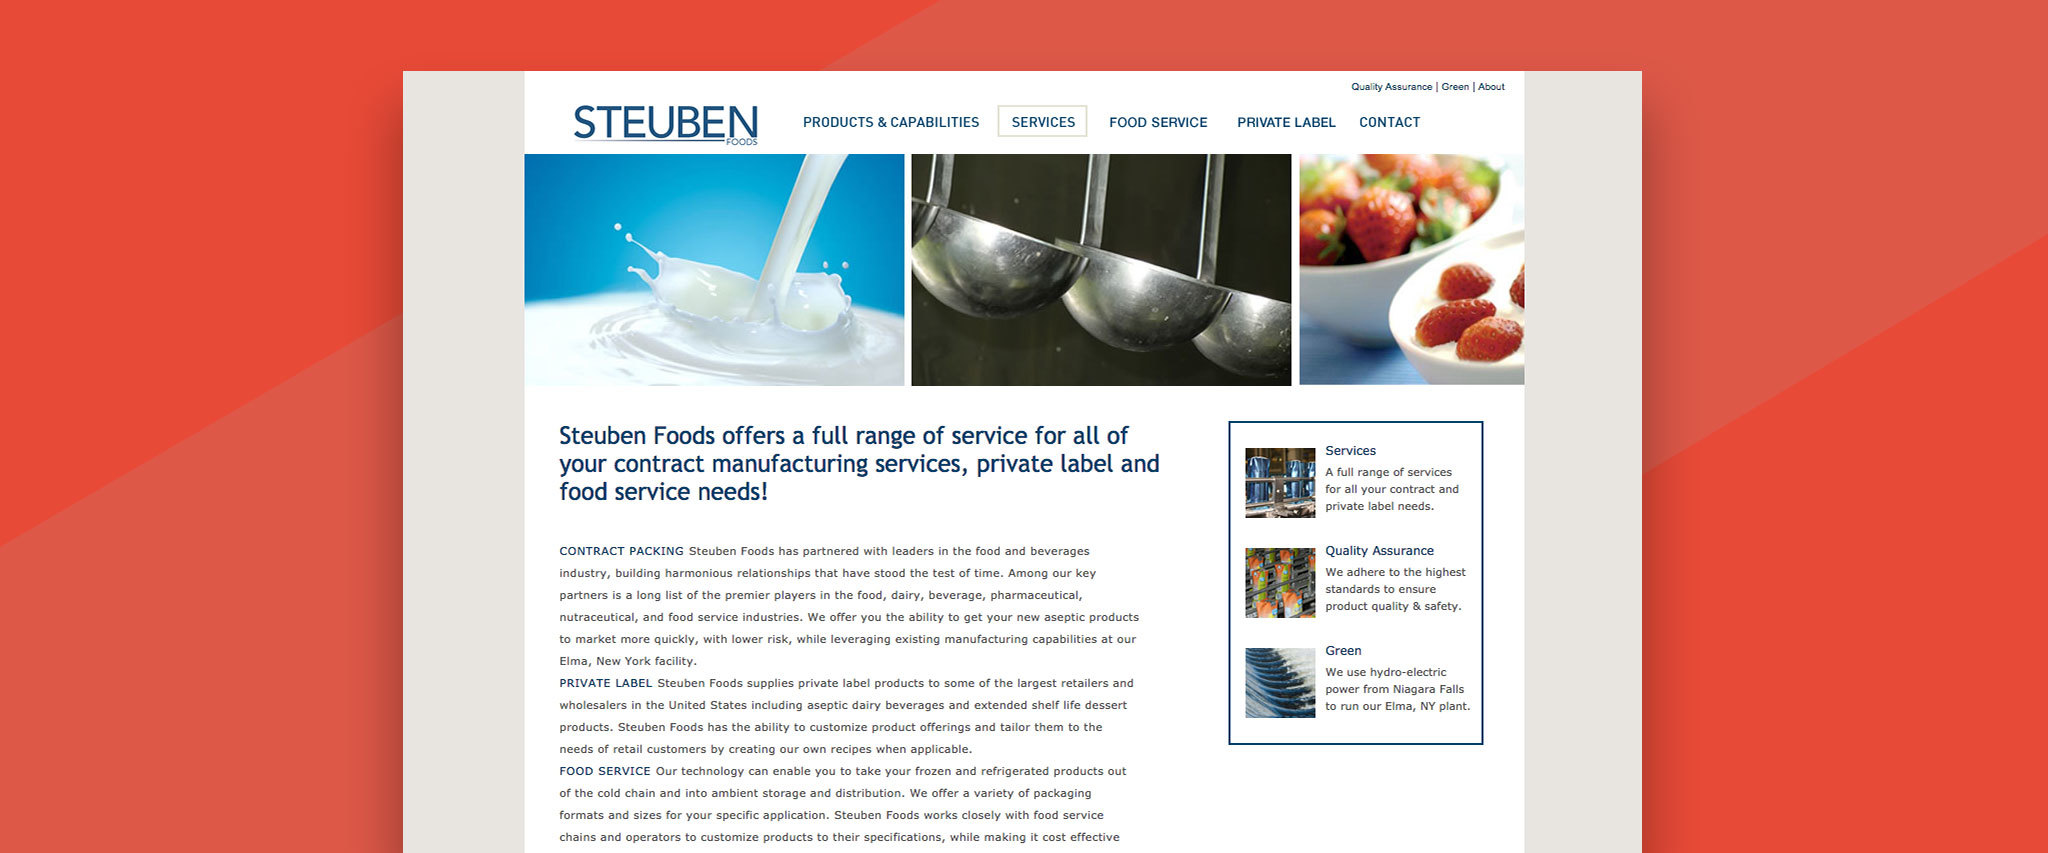 Steuben Foods Gallery